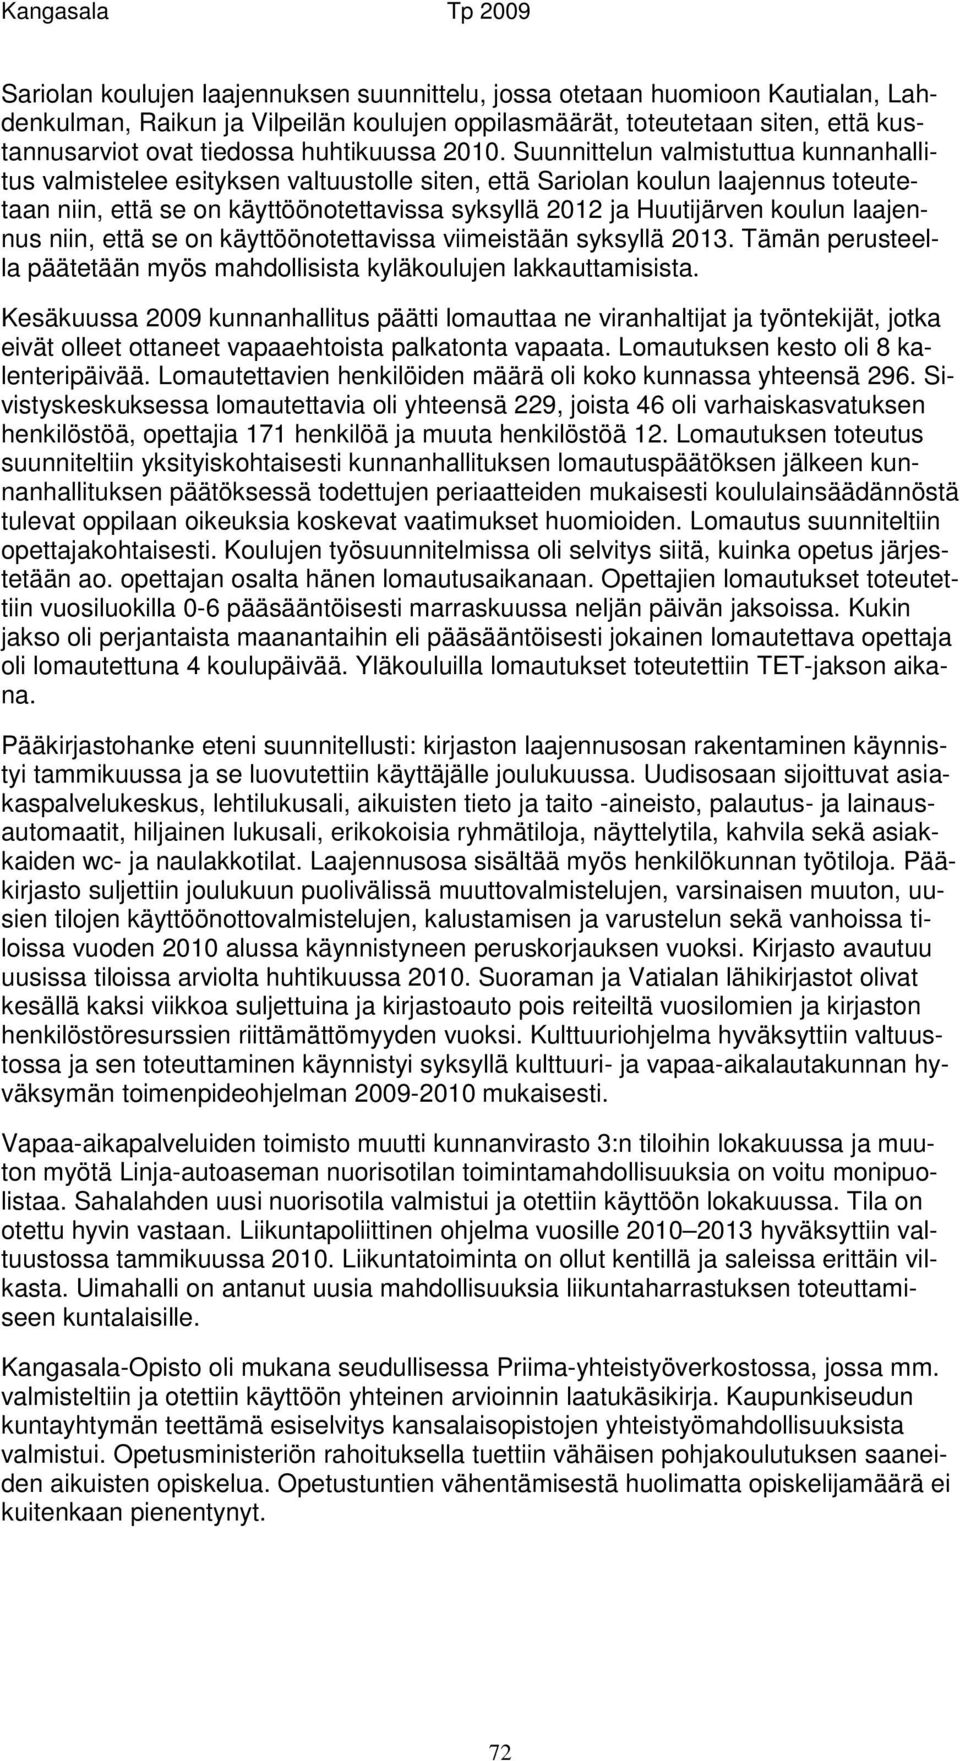 Suunnittelun valmistuttua kunnanhallitus valmistelee esityksen valtuustolle siten, että Sariolan koulun laajennus toteutetaan niin, että se on käyttöönotettavissa syksyllä 2012 ja Huutijärven koulun